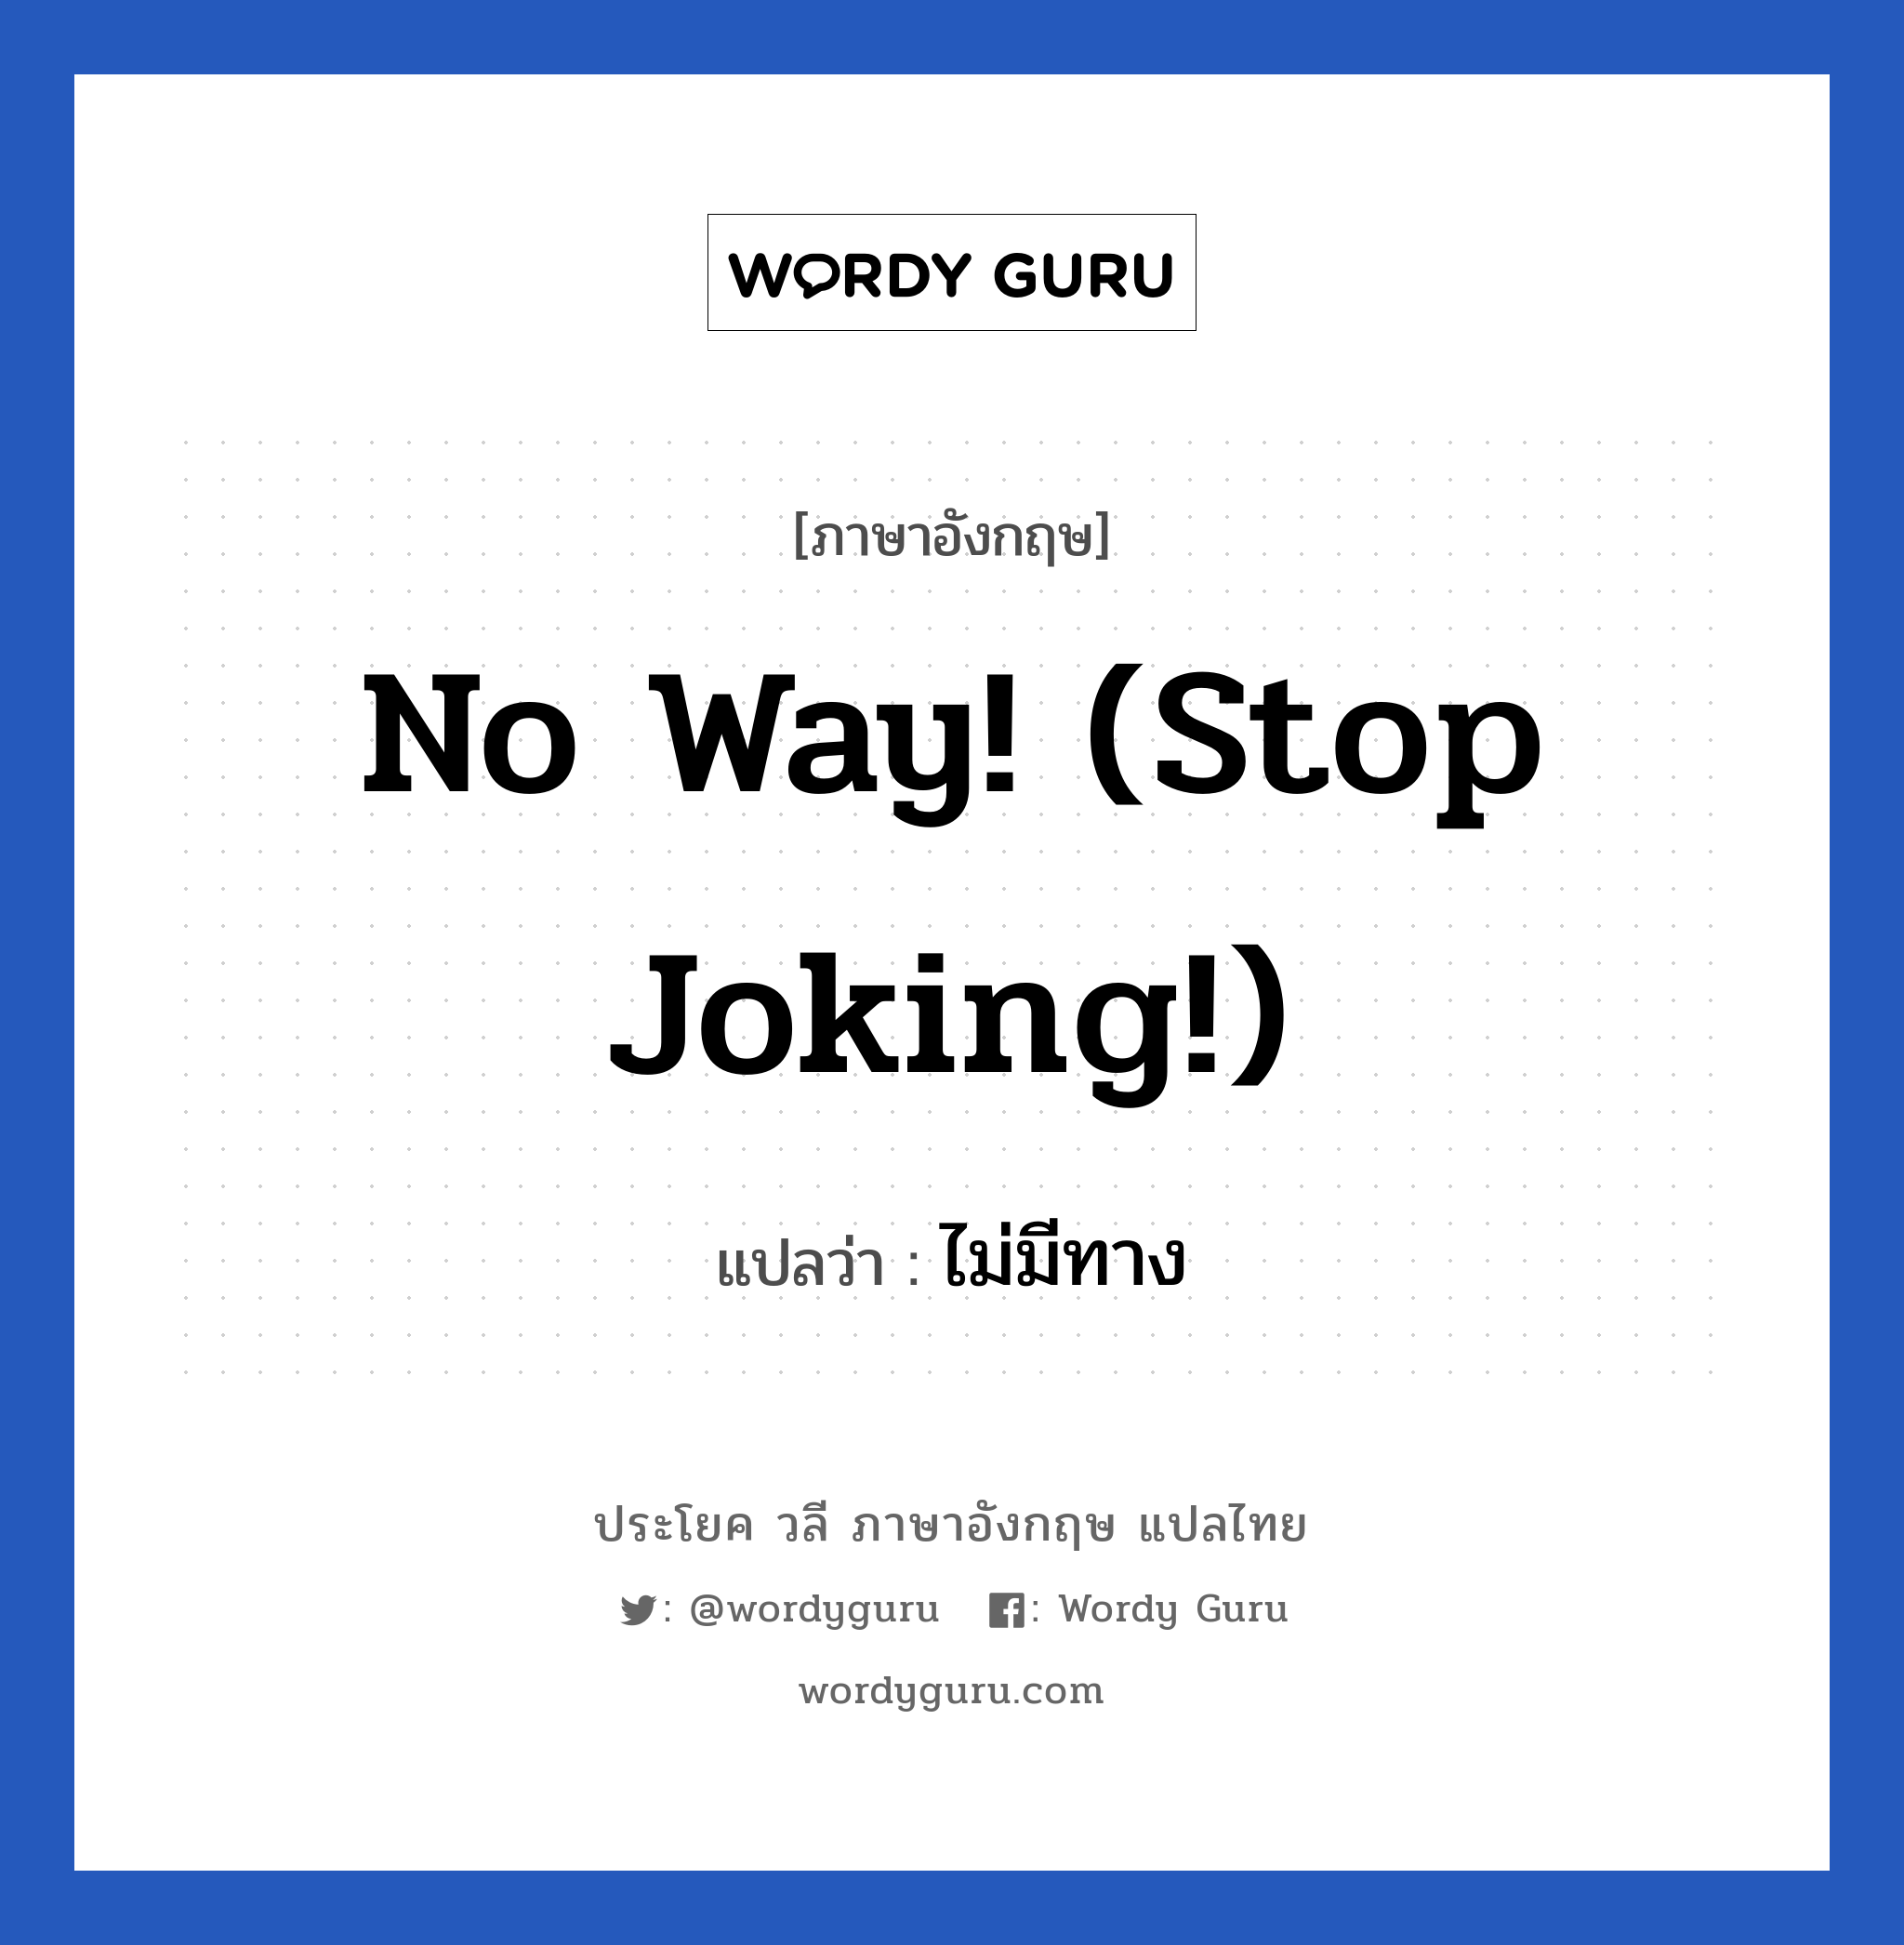 ไม่มีทาง ภาษาอังกฤษ?, วลีภาษาอังกฤษ ไม่มีทาง แปลว่า No way! (Stop joking!)